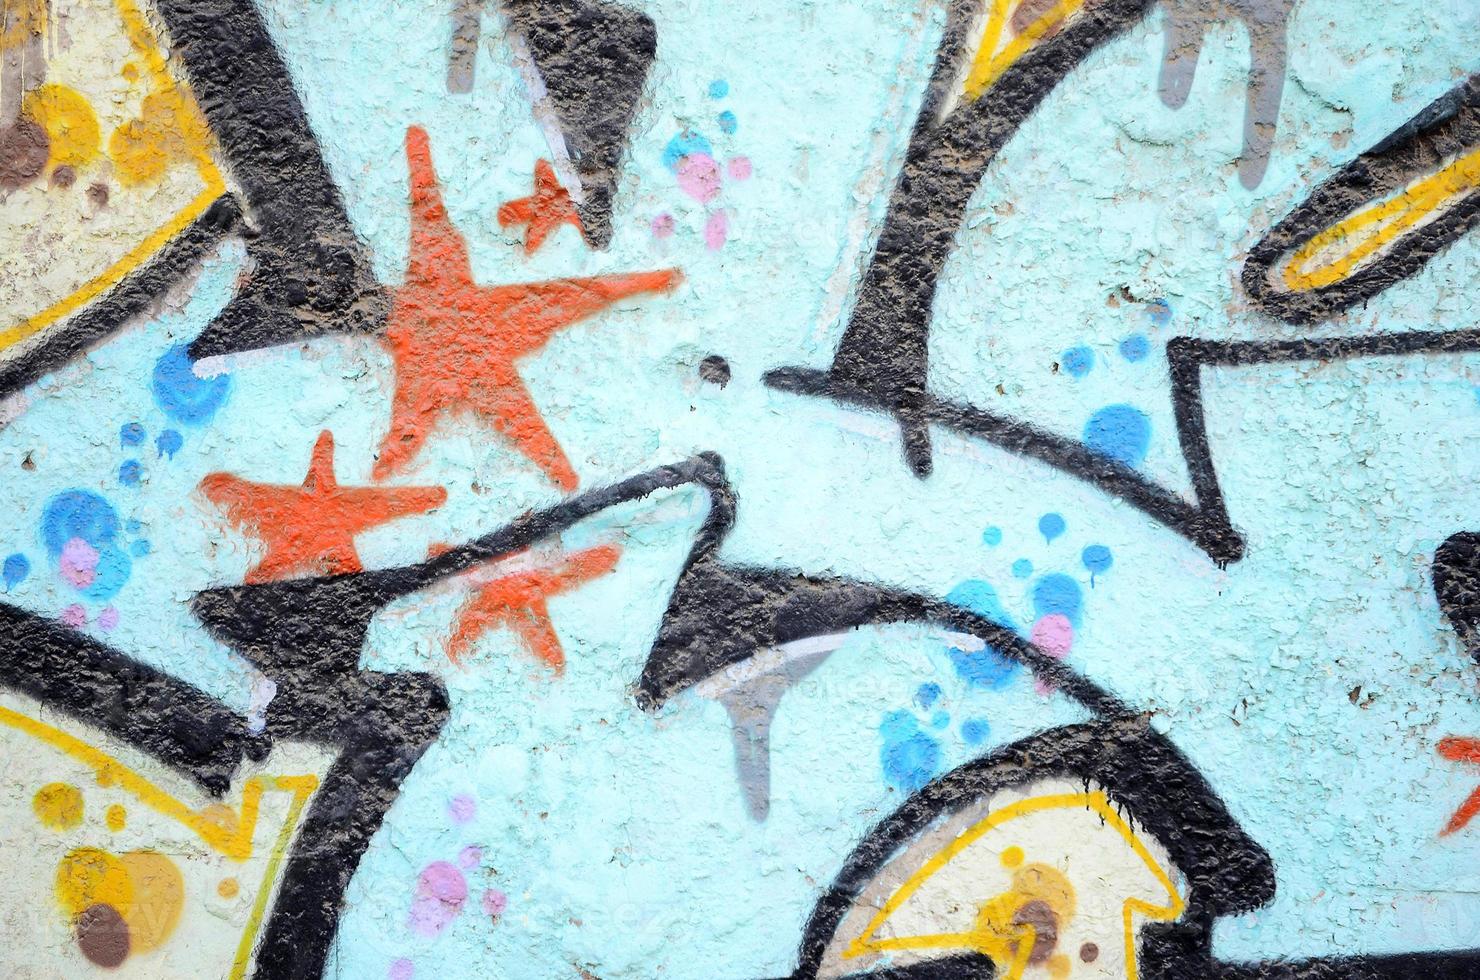 structuur van een fragment van de muur met graffiti schilderen, welke is afgebeeld Aan het. een beeld van een stuk van graffiti tekening net zo een foto Aan straat kunst en graffiti cultuur topics